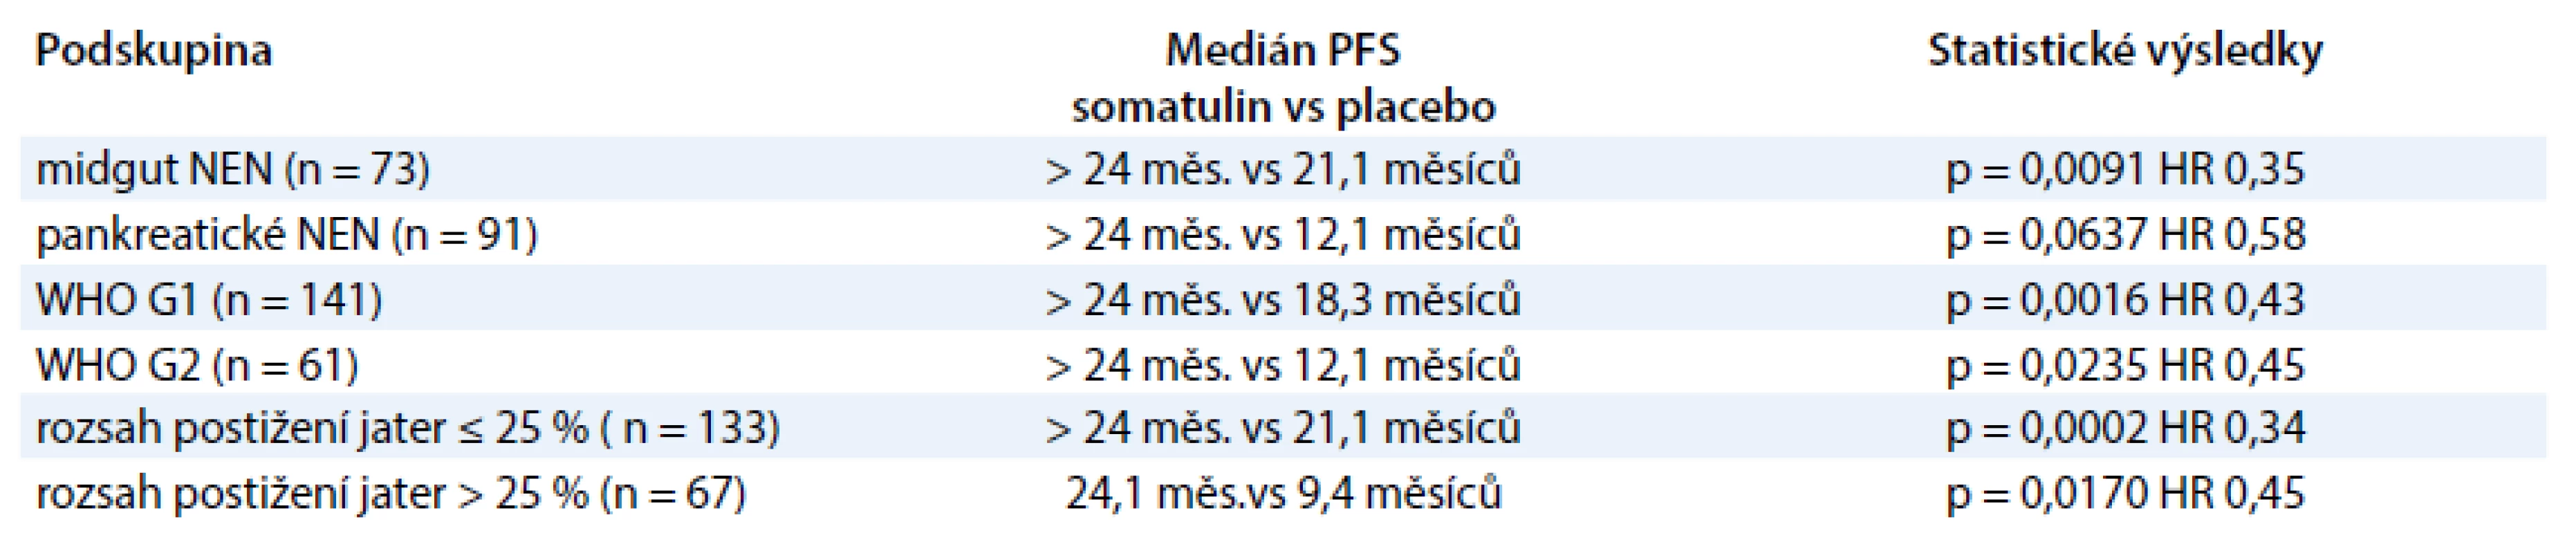 Studie CLARINET. Výsledky PFS u podskupin pacientů [6].